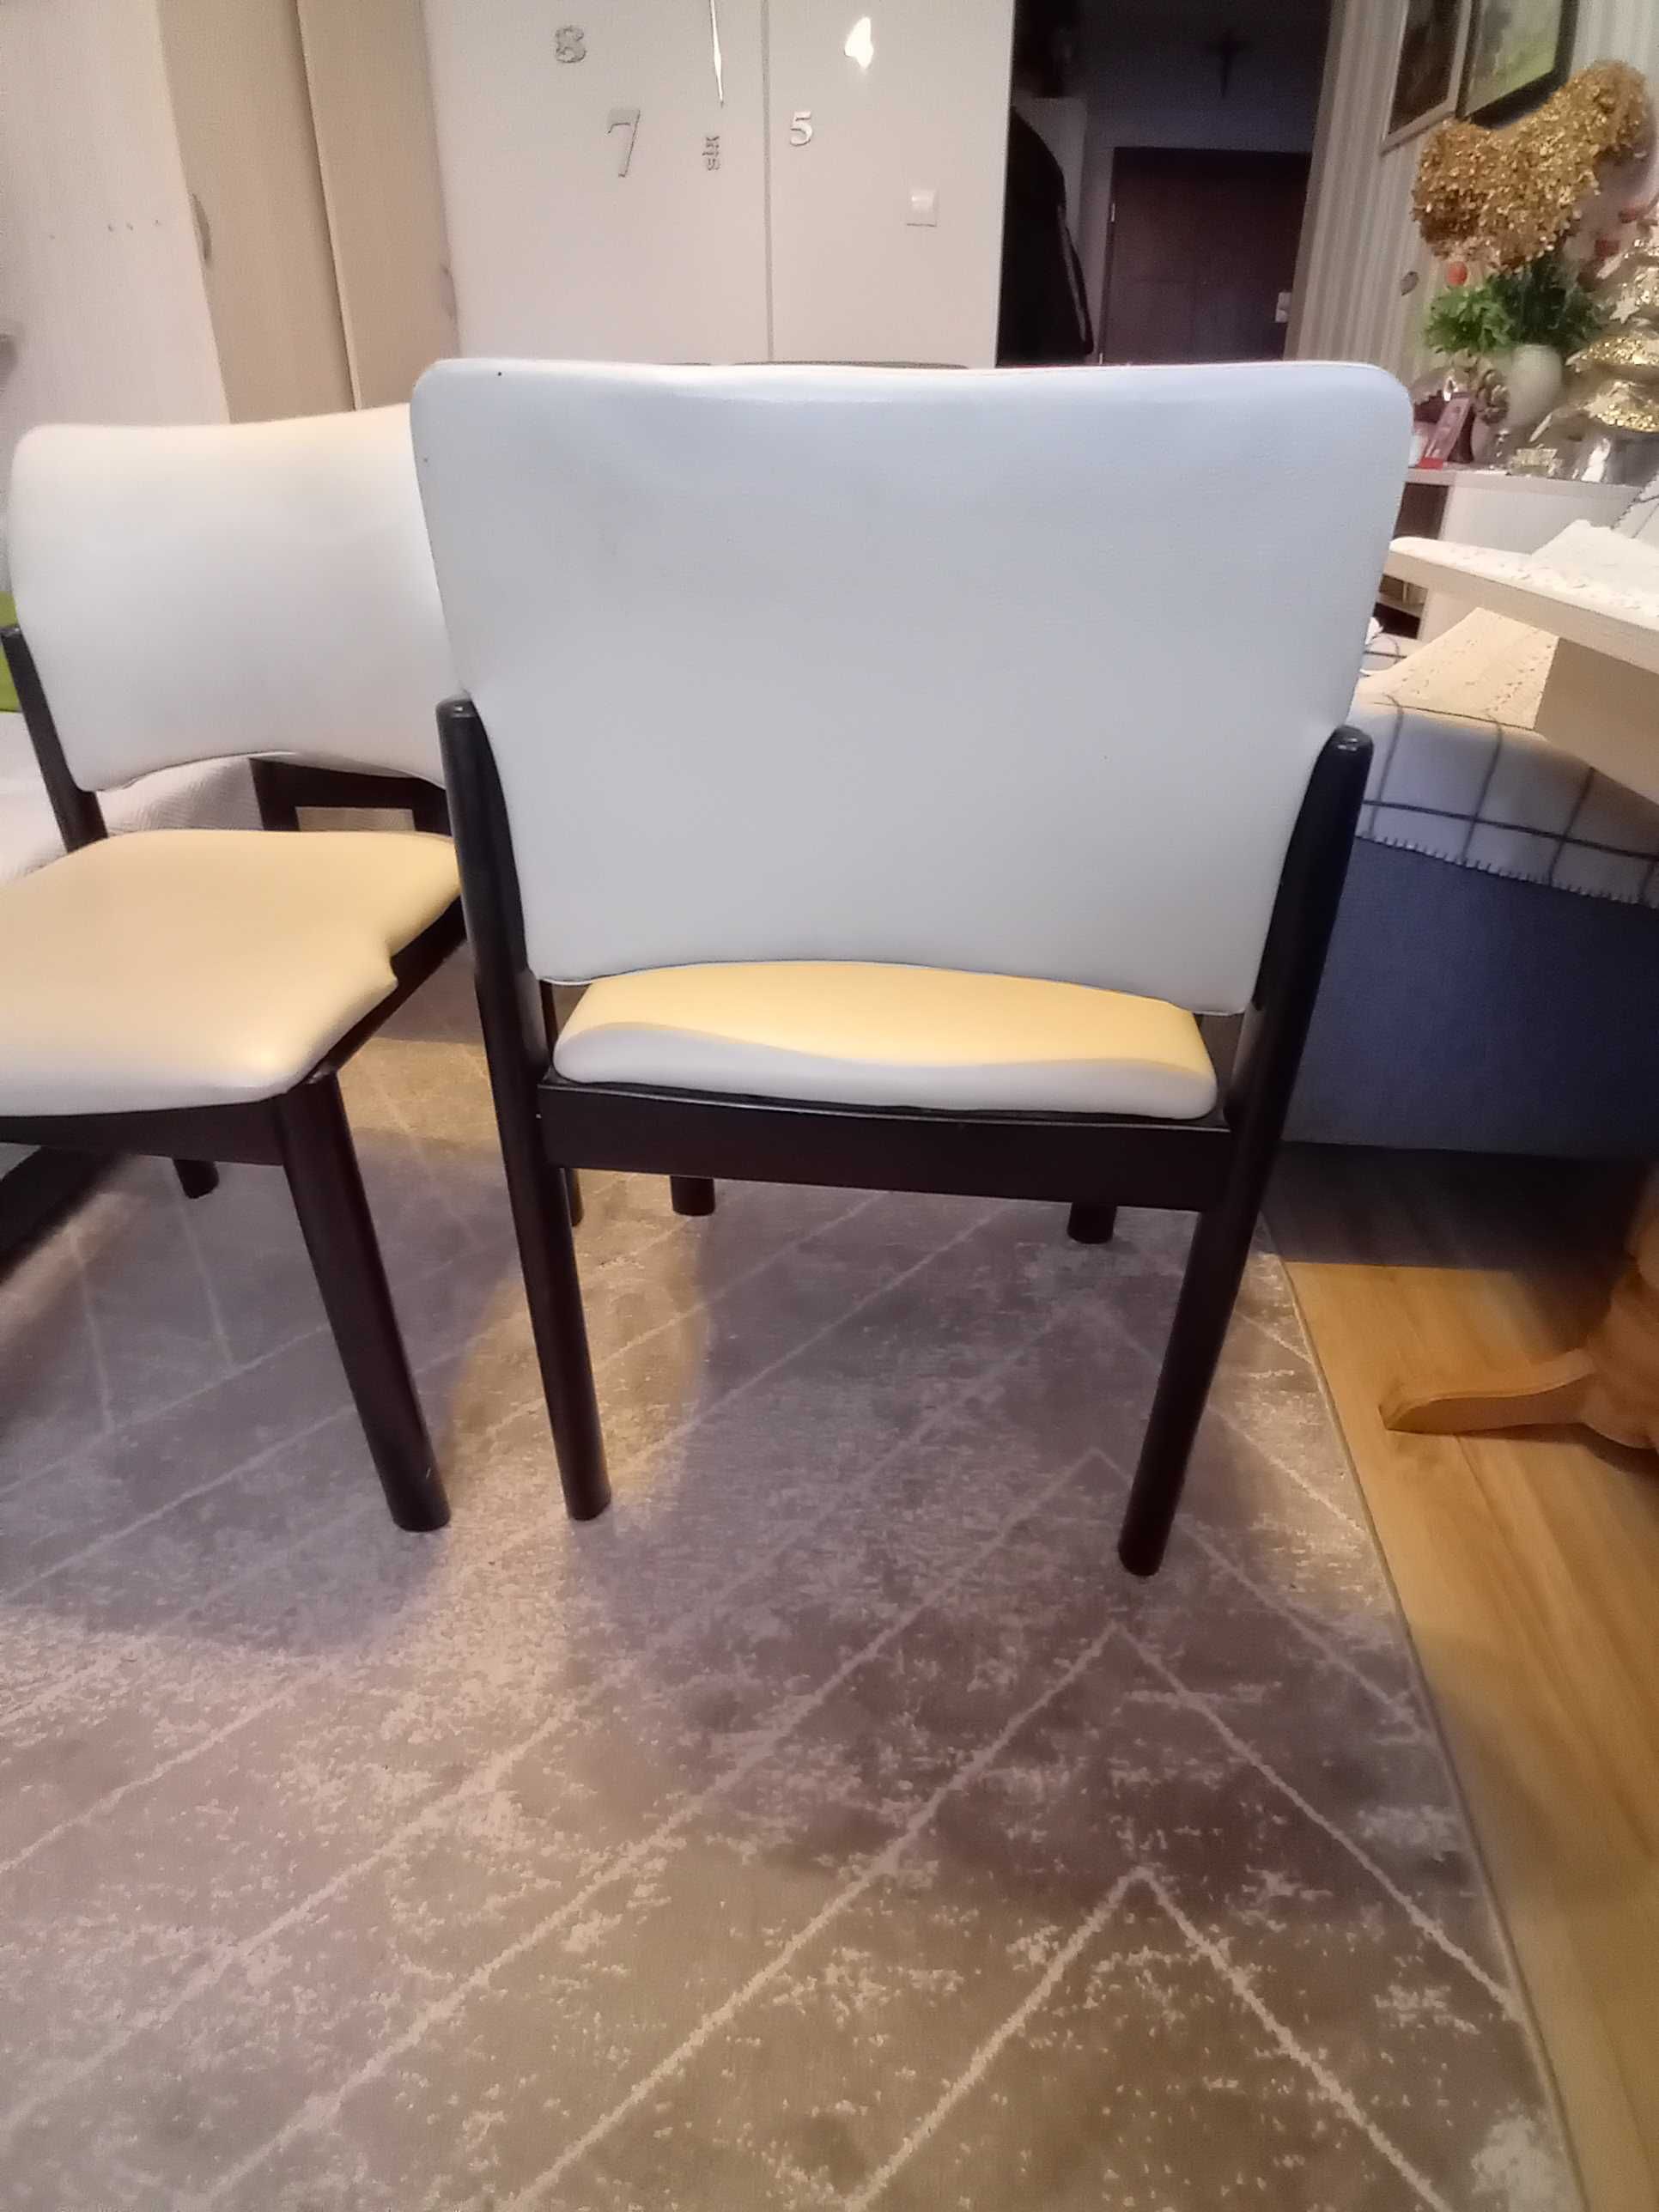 sprzedam eleganckie krzesła pokojowe/oferta do 15. V/